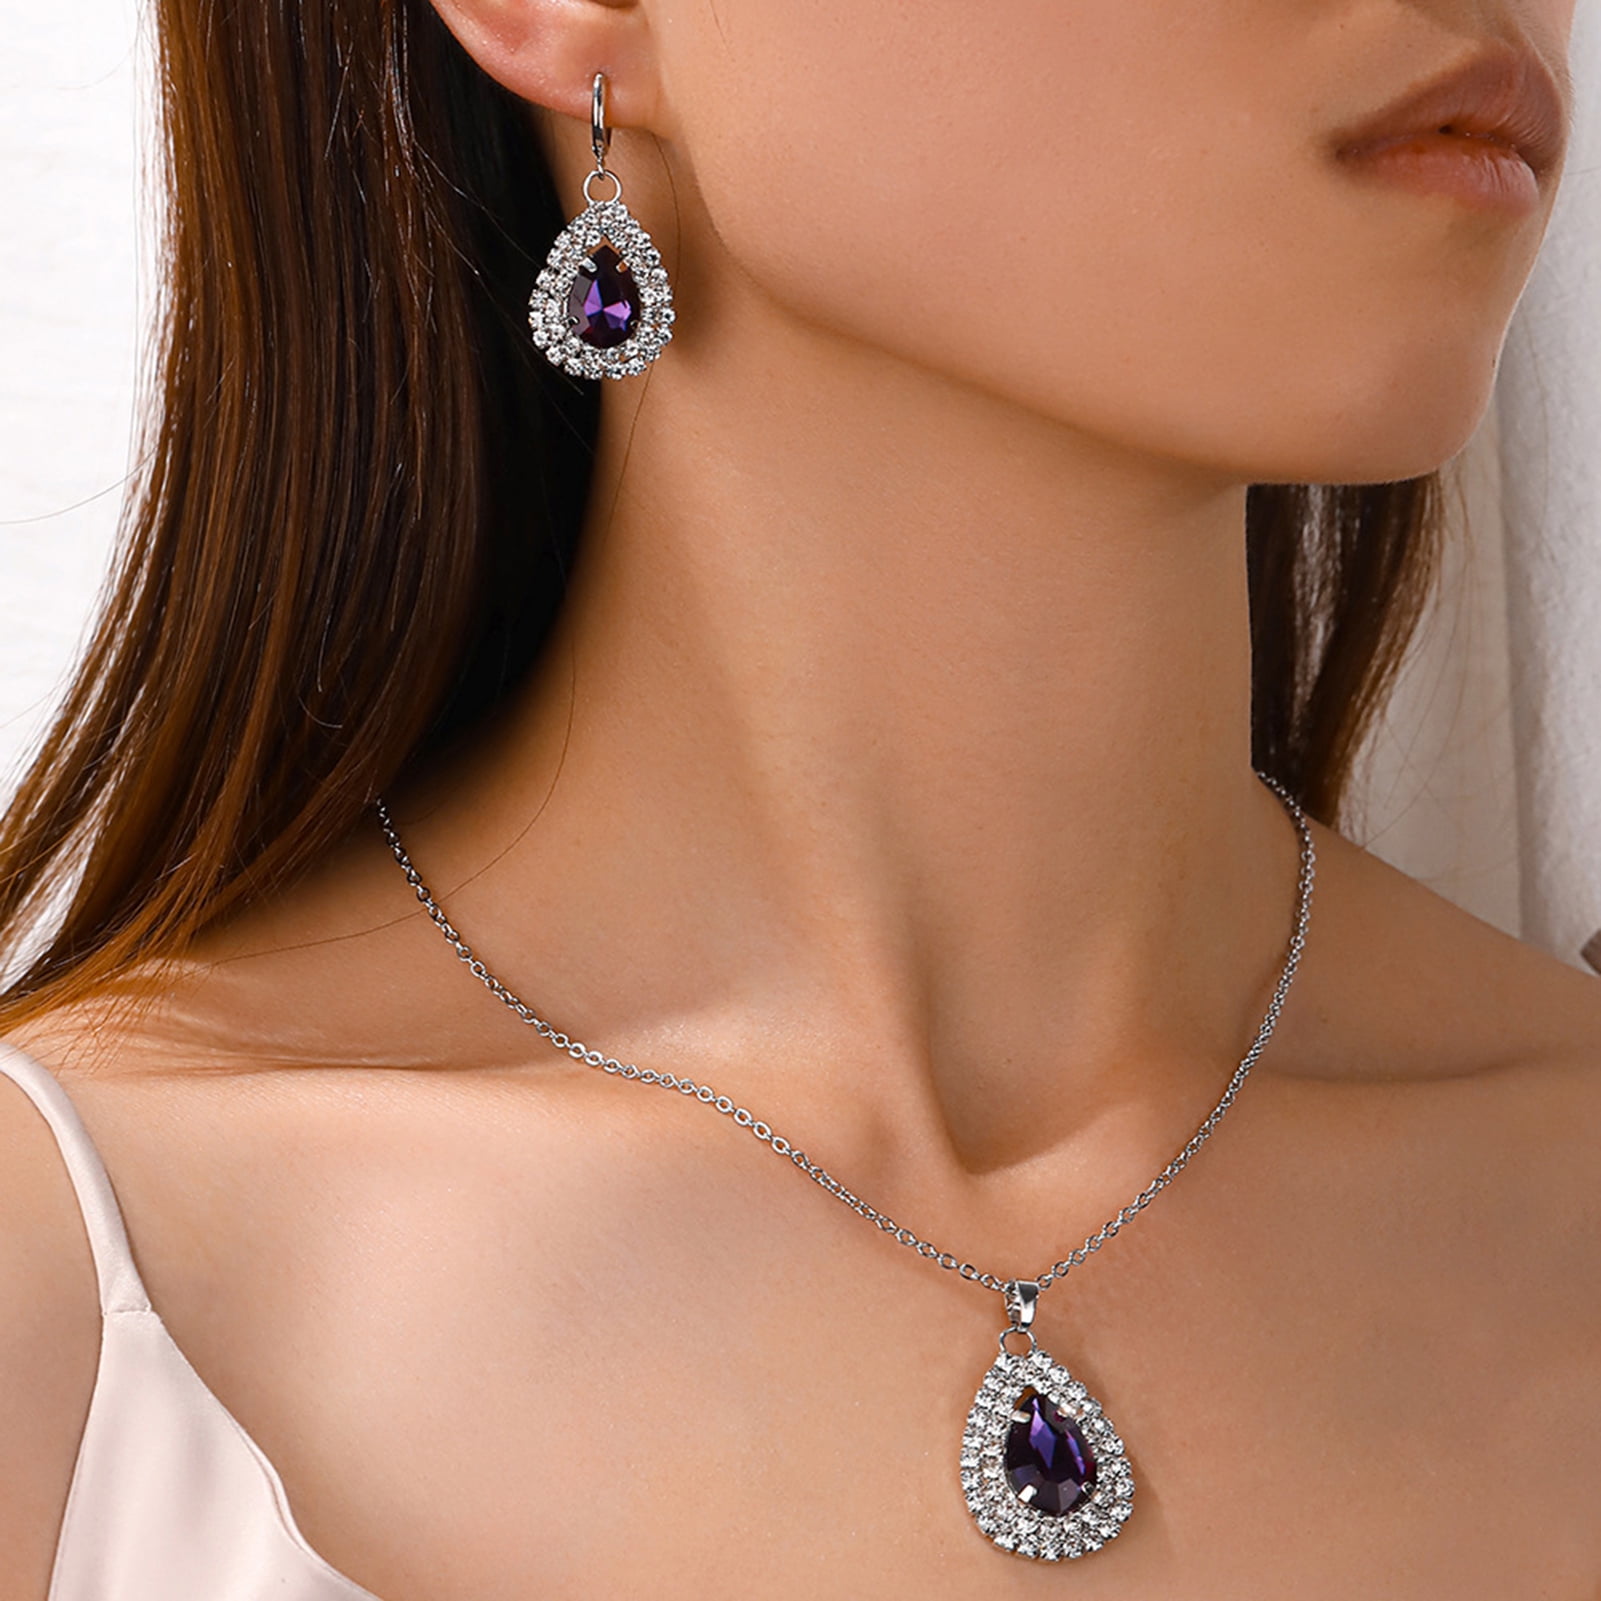 Black Diamond Swarovski Crystal Necklace with Swarovski Necklace Exten -  Creative Jewelry by Marcia